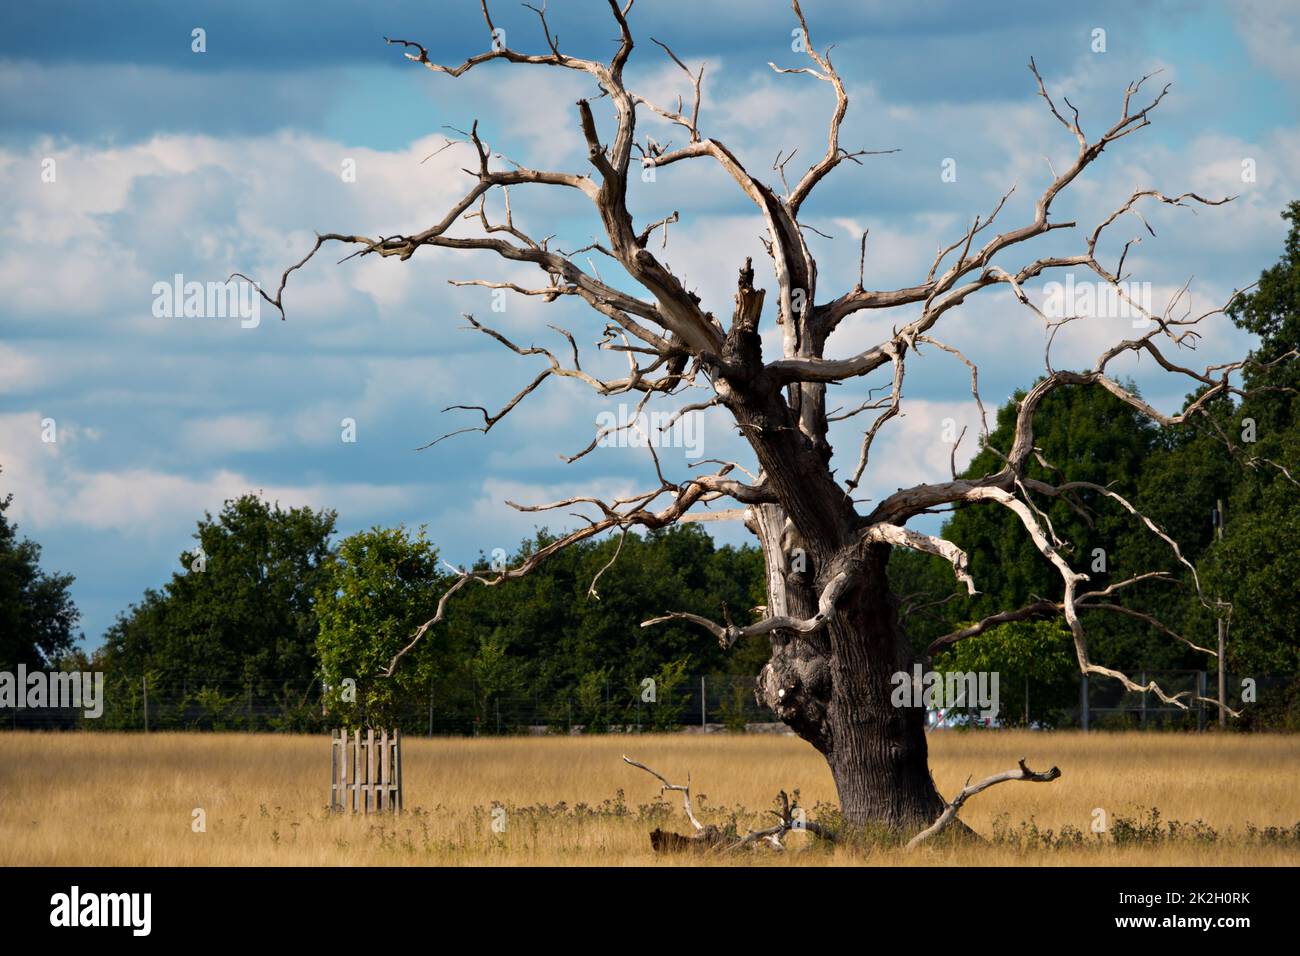 Single dead old oak tree in a field Stock Photo